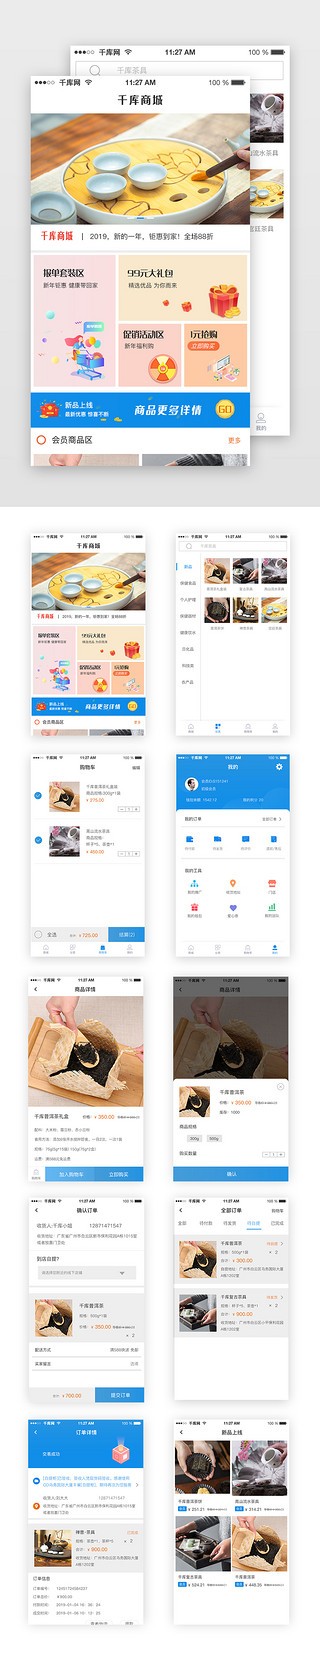 蓝色简约商城app电商购物UI综合页面